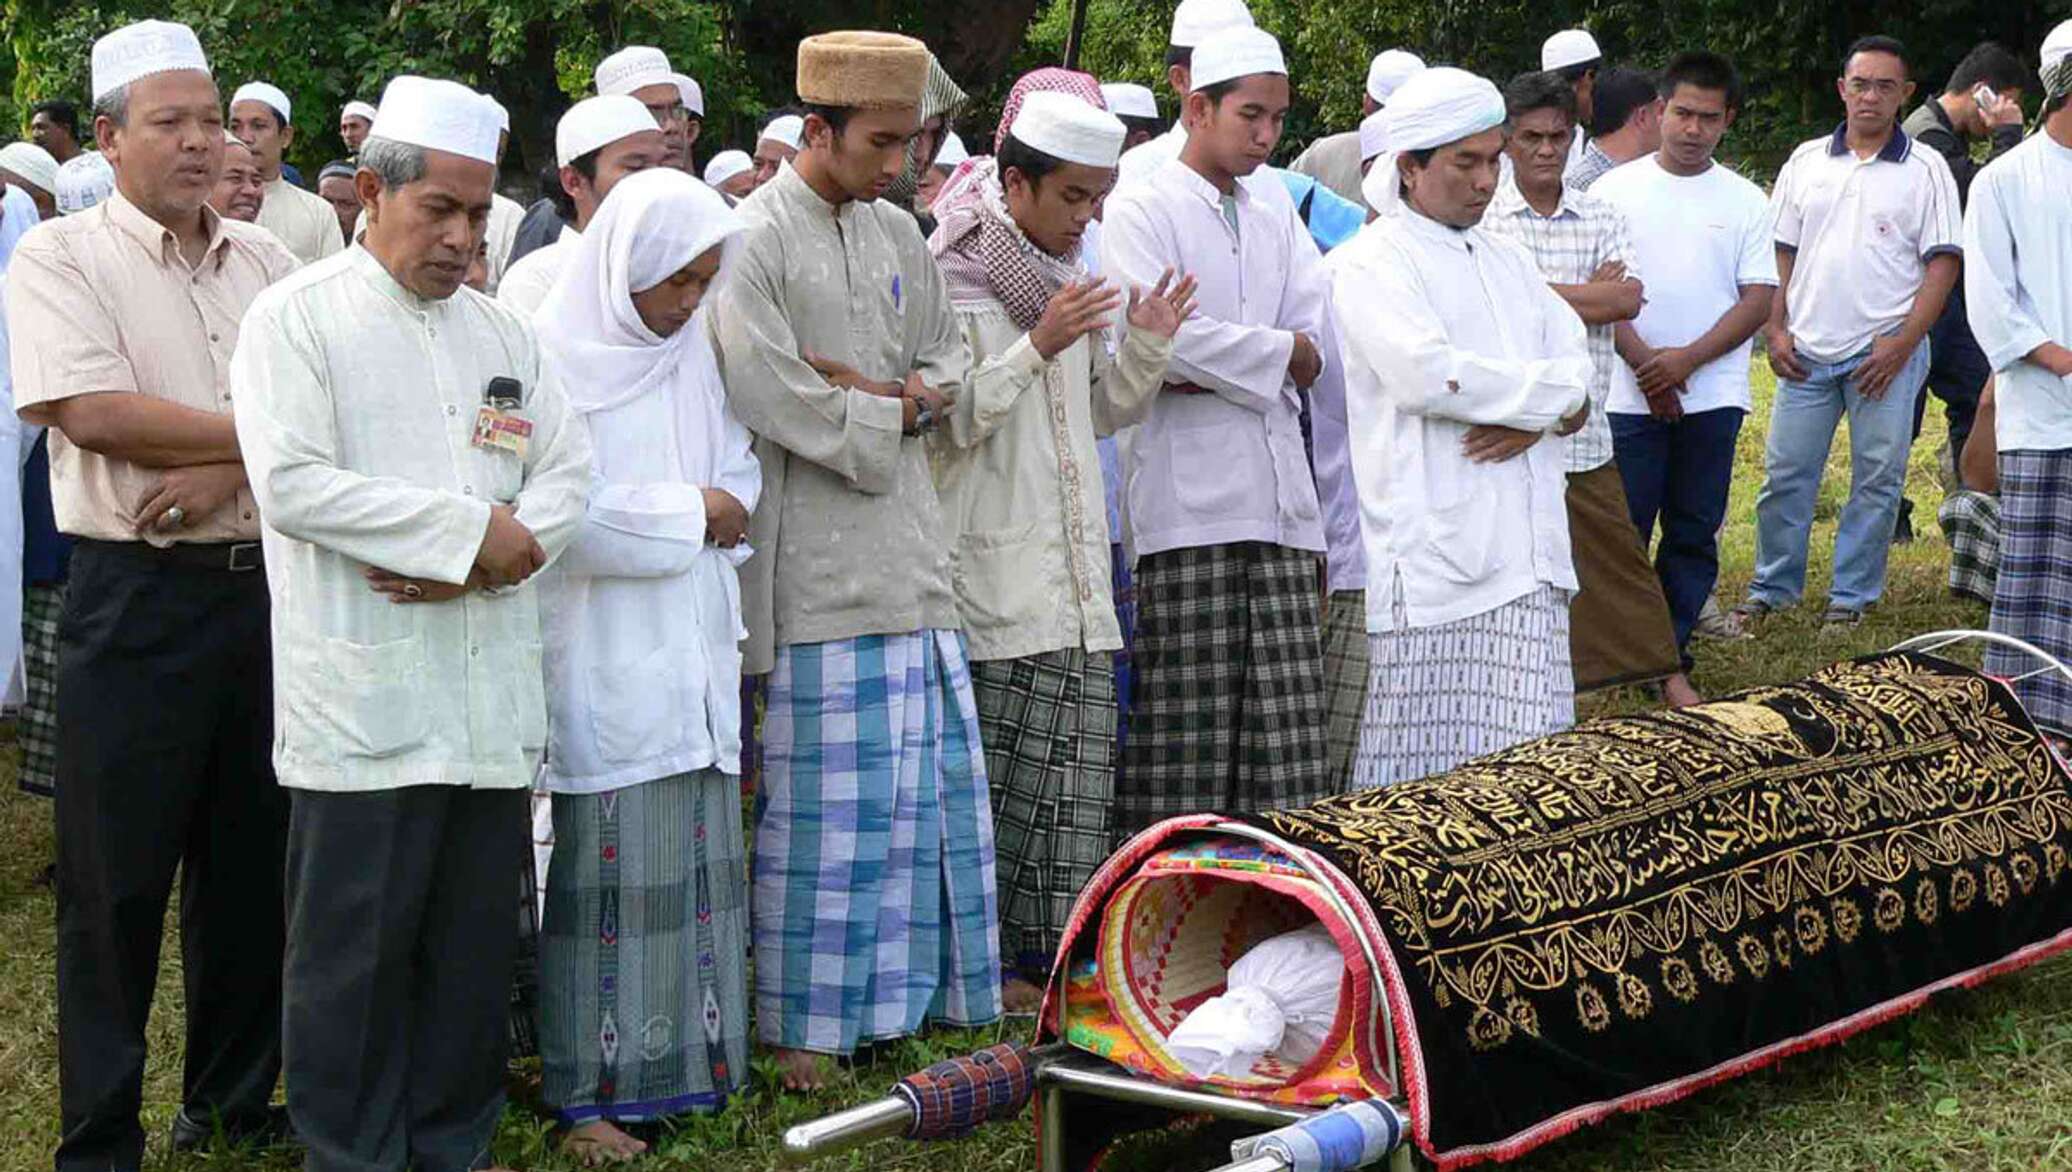 Традиции прощания. Похоронный обряд у мусульман.